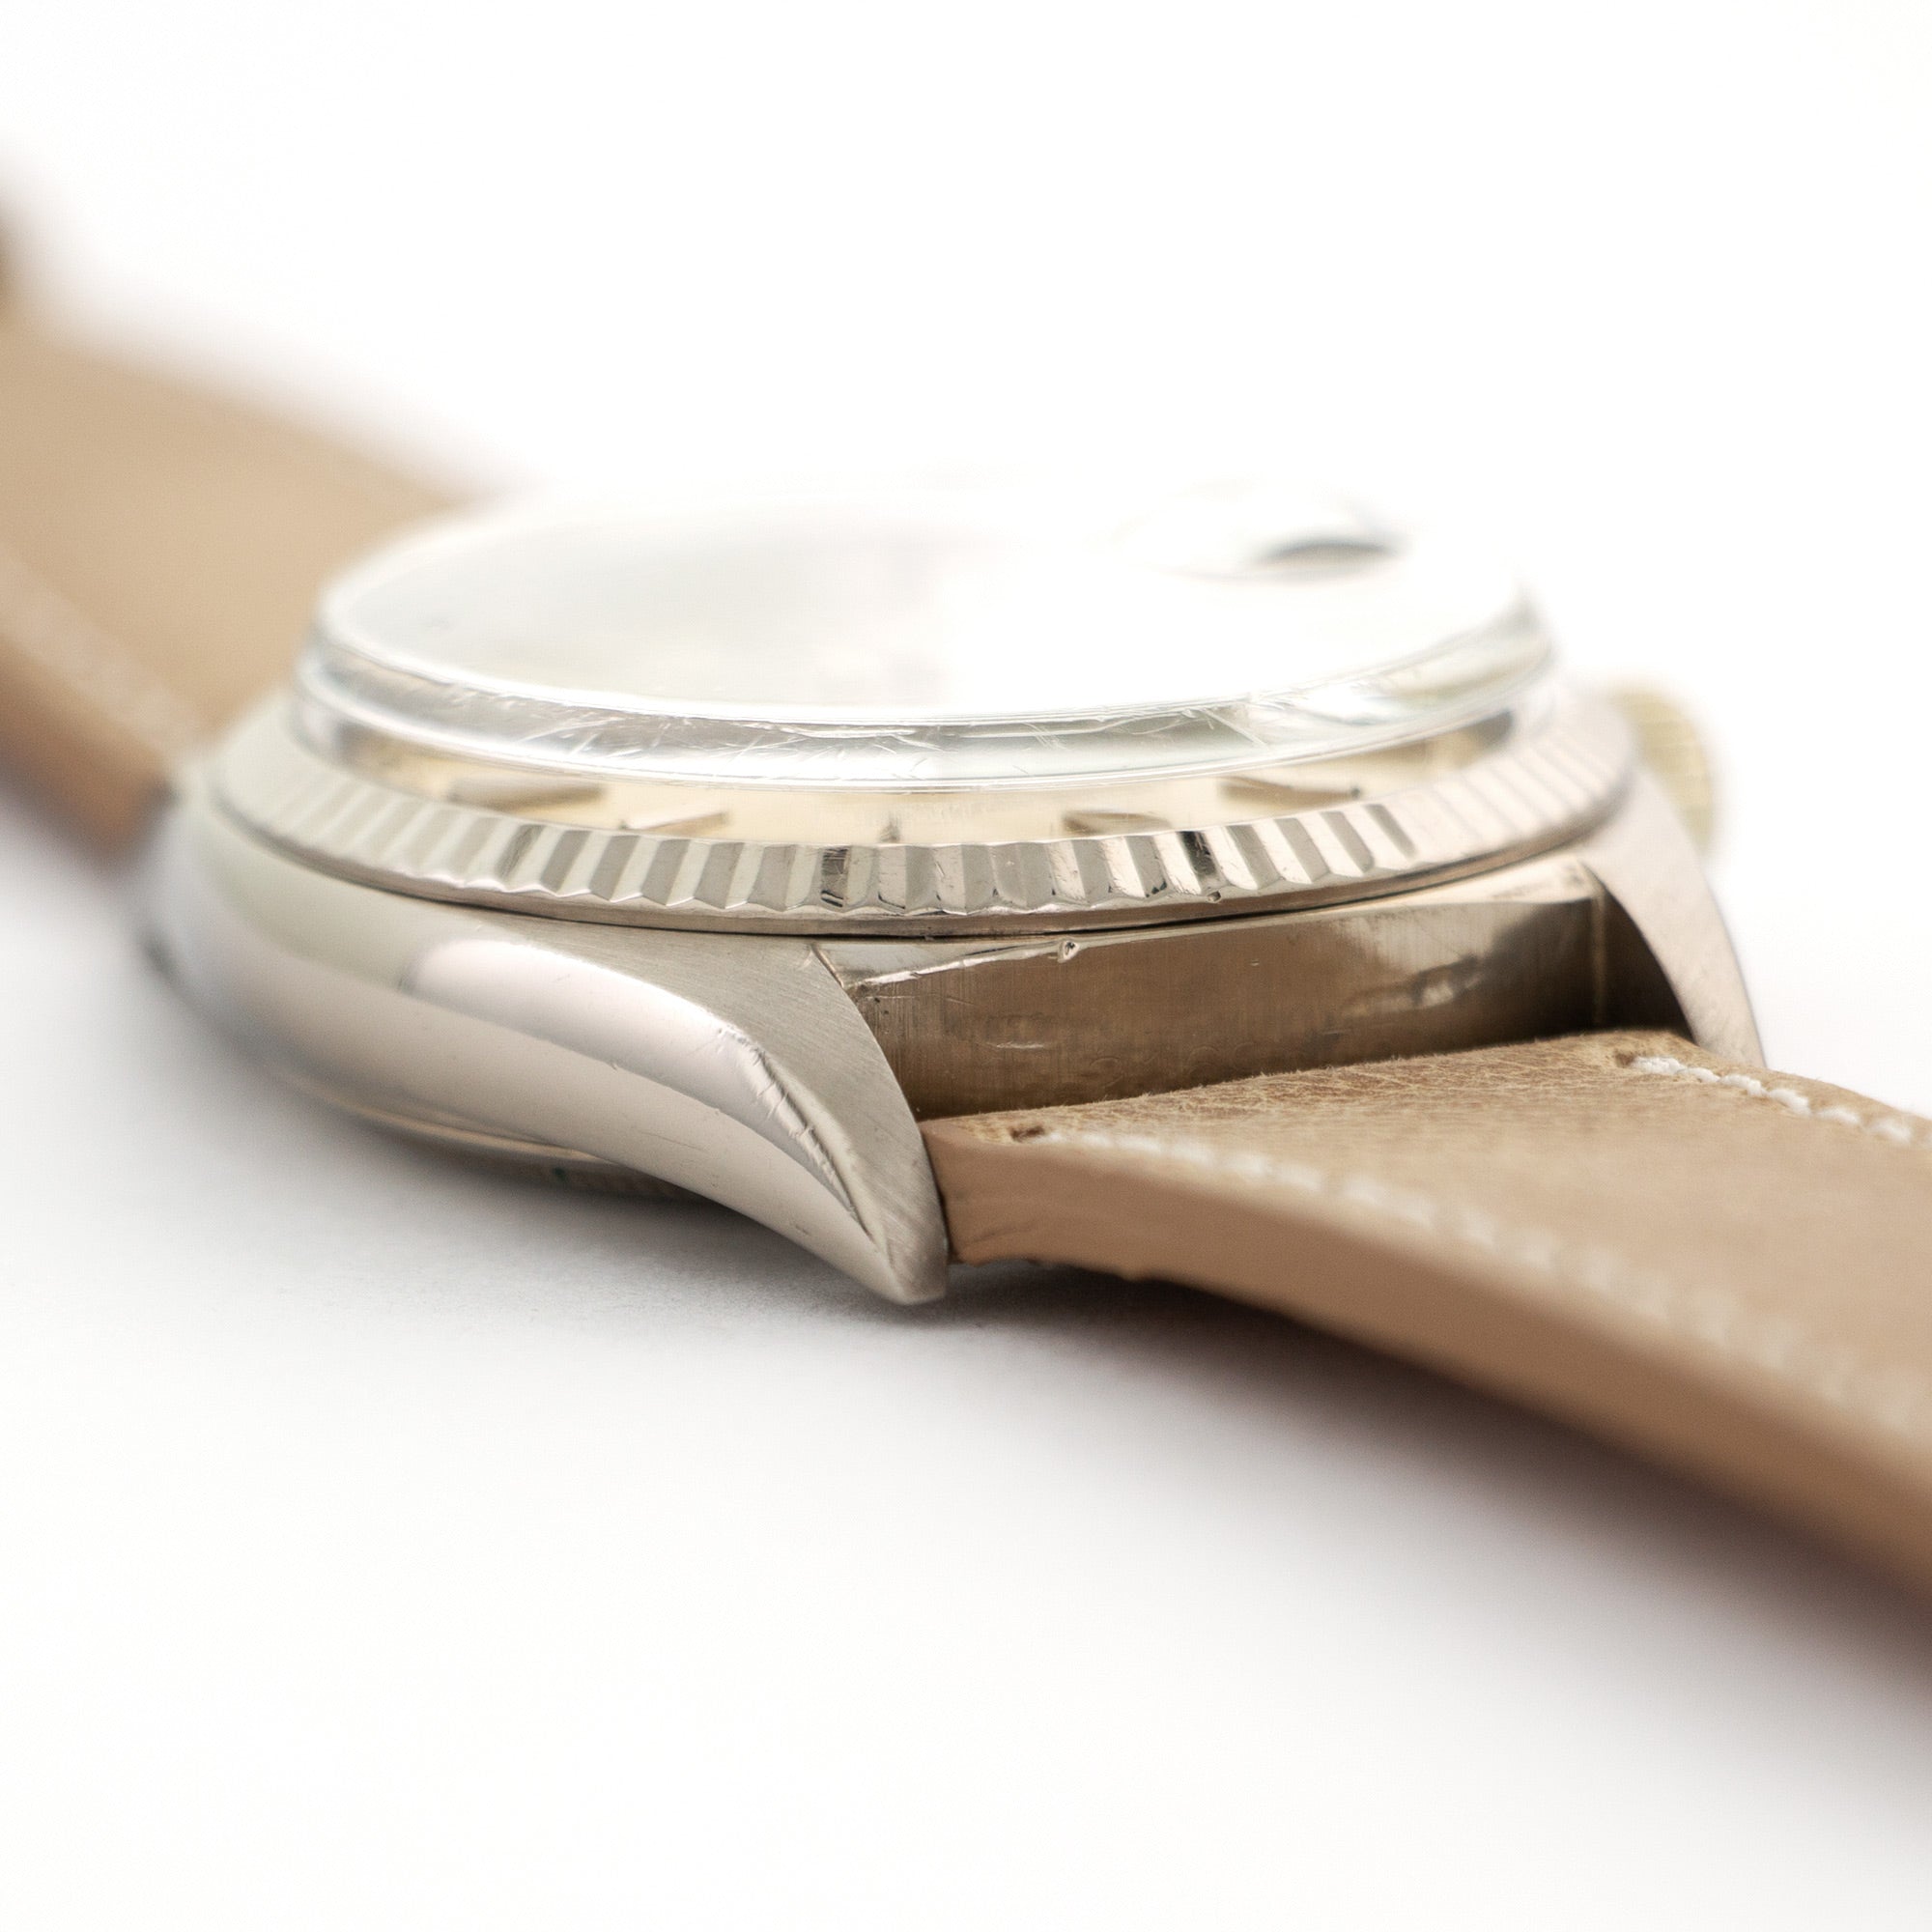 Rolex - Rolex White Gold Day-Date Watch Ref. 1803, Circa 1967 - The Keystone Watches